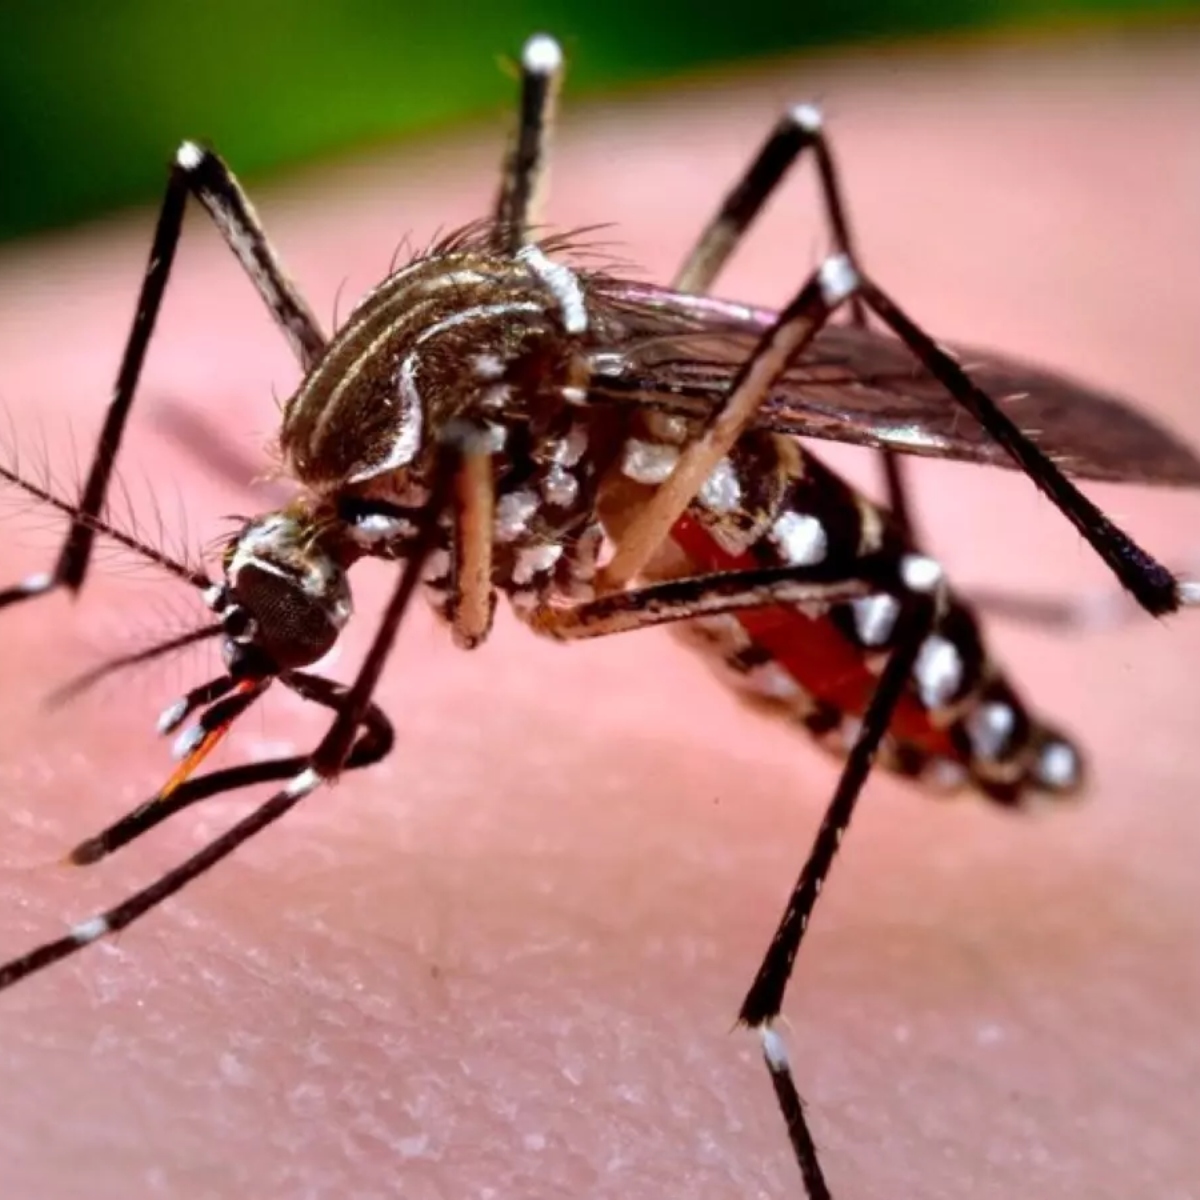  Ressurgimento do sorotipo 3 da dengue chega ao Paraná 